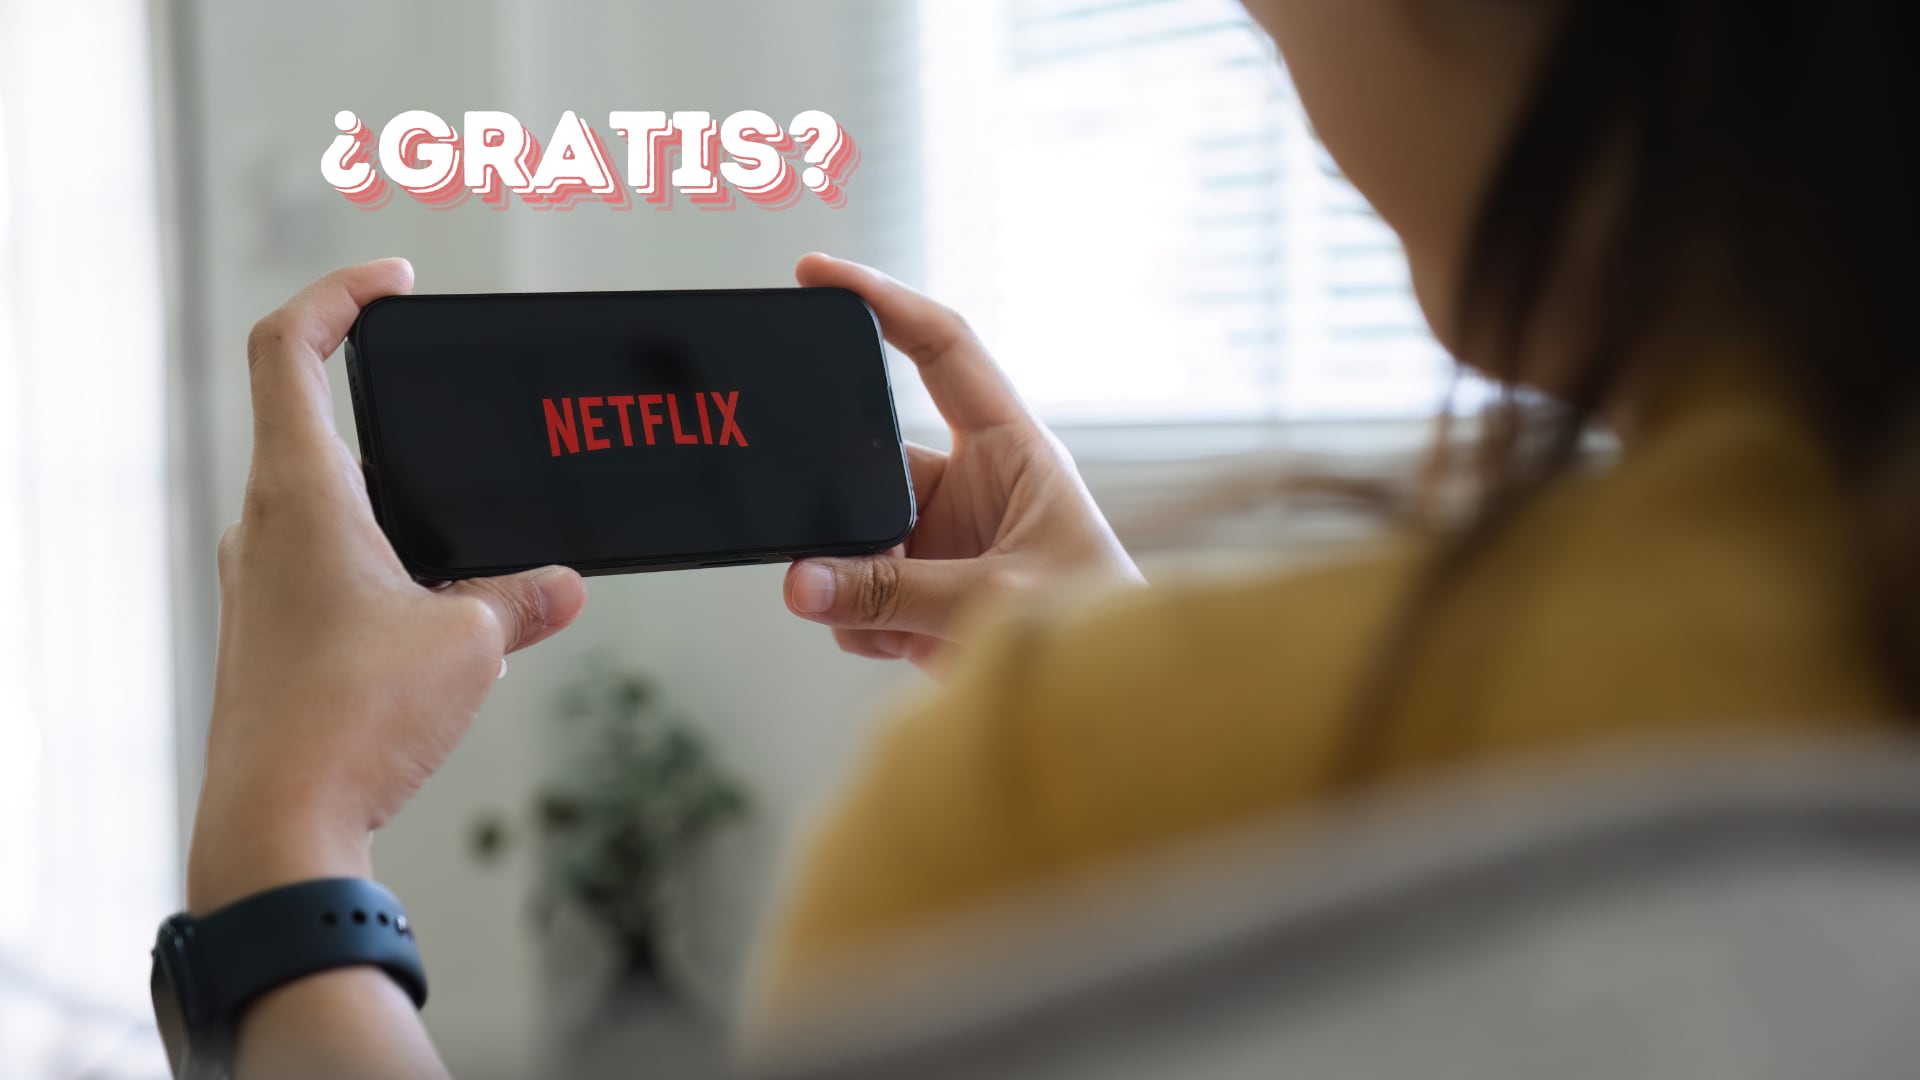 Netflix evalúa plan de suscripción gratuito con anuncios